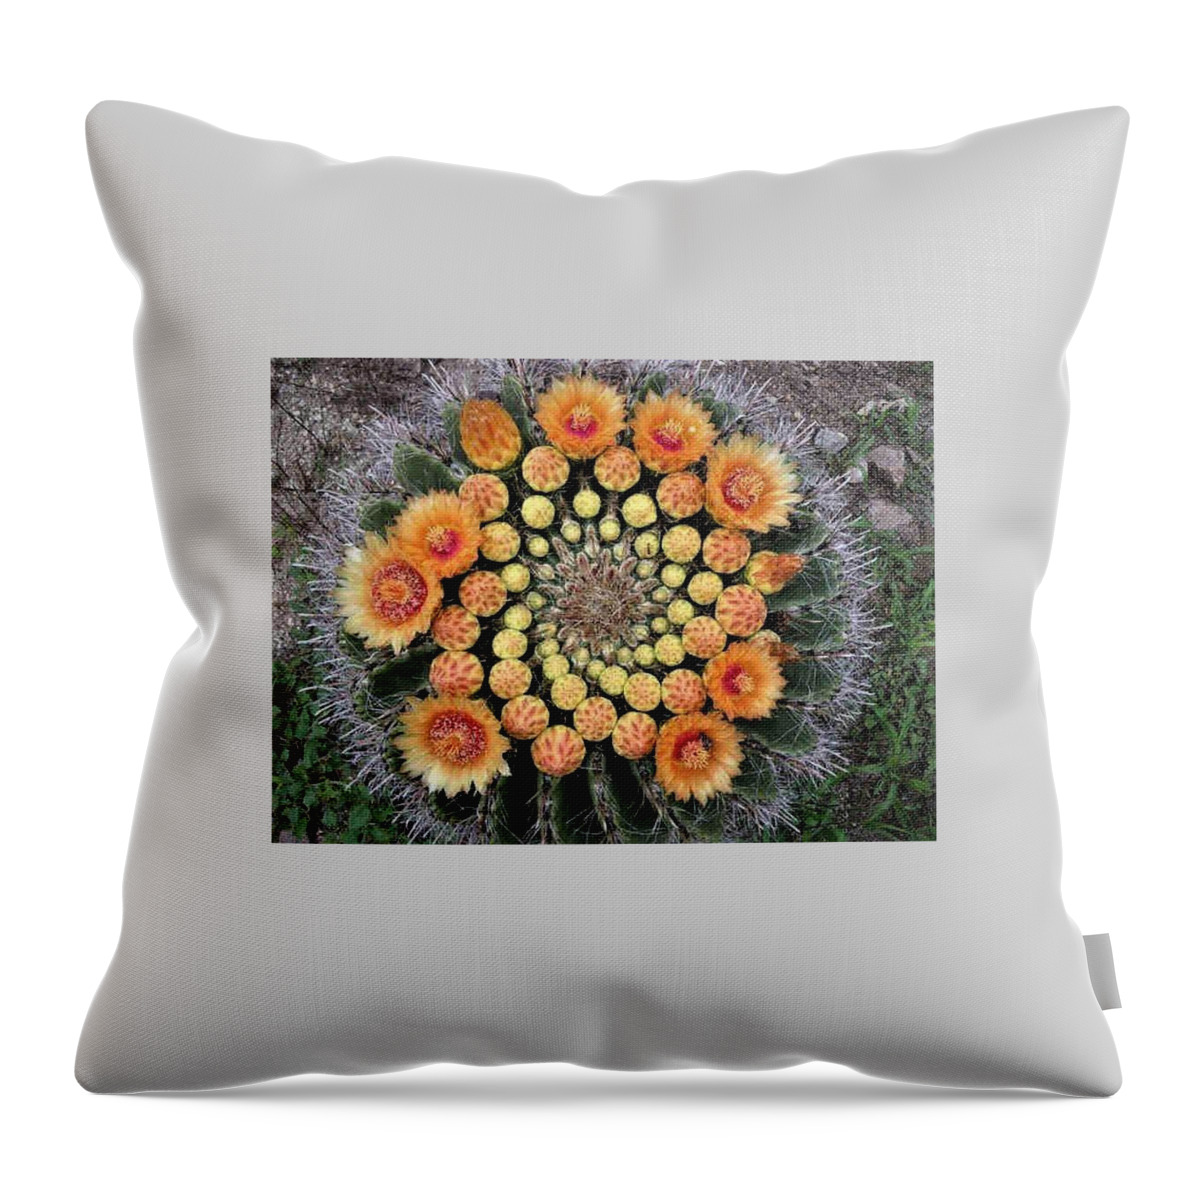 Cactus Throw Pillow featuring the photograph Cactus Mandala by Nancy Ayanna Wyatt